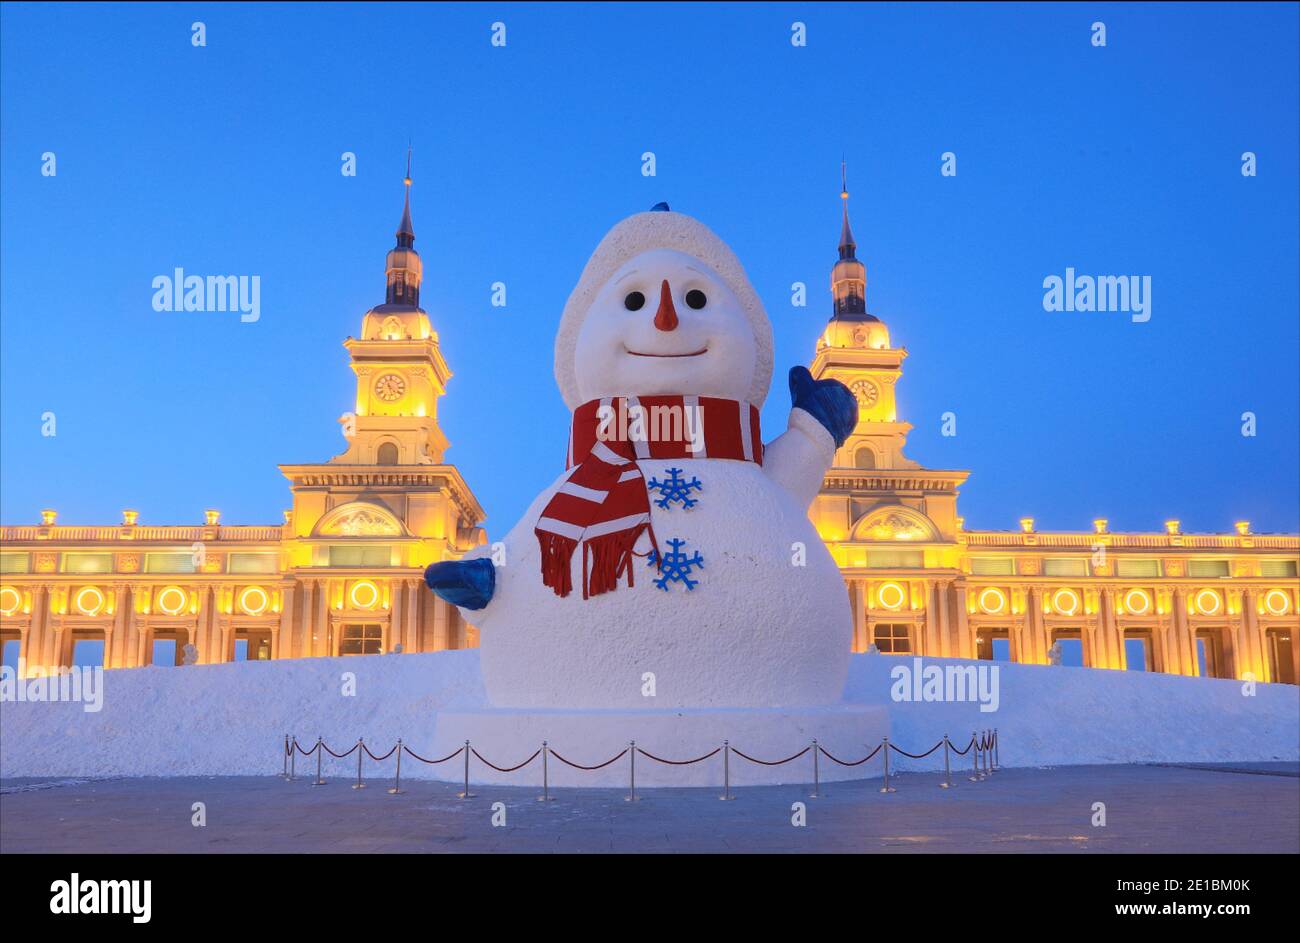 Un enorme pupazzo di neve con l'altezza di 18 metri si erge Di fronte all'ingresso principale, simile a un castello, di Harbin Music Park e attira l'attenzione dei turisti Foto Stock